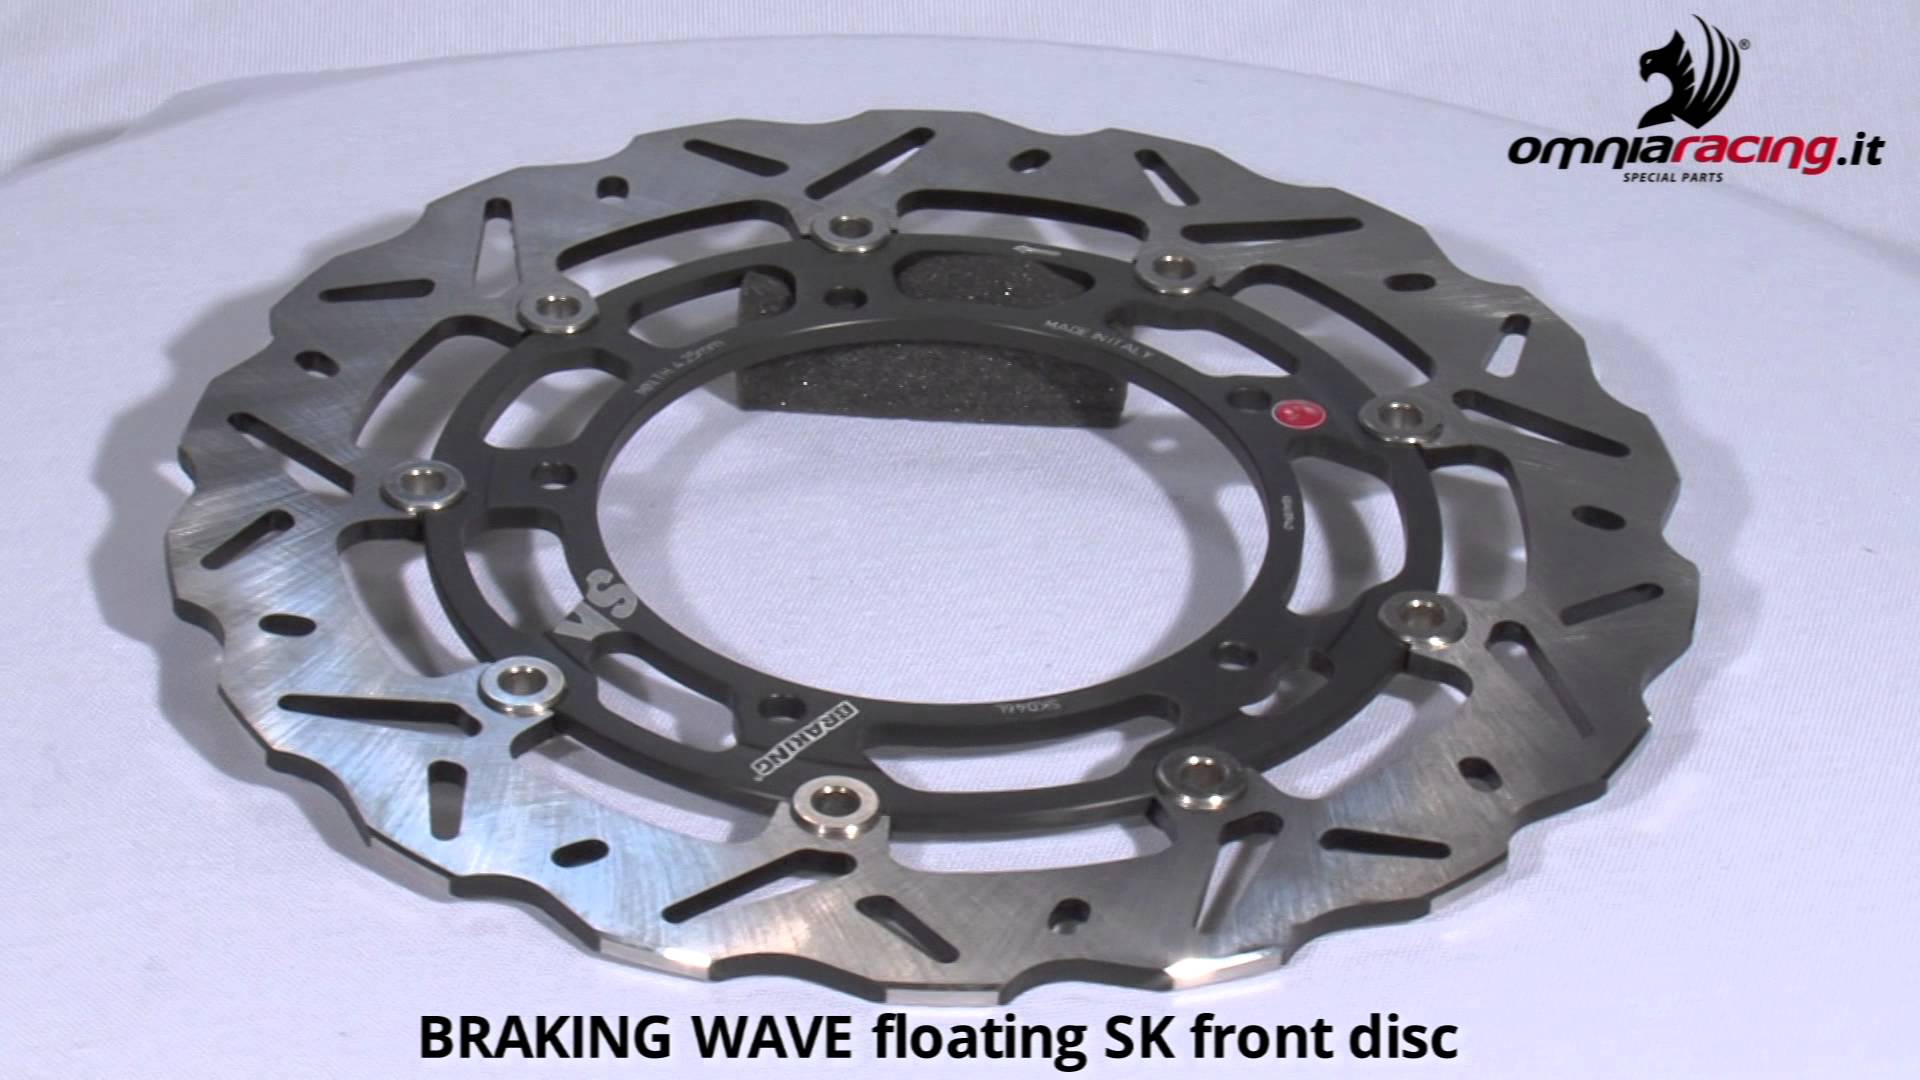 Dischi freno Braking wave SK front rotor discs motorbike brake ...